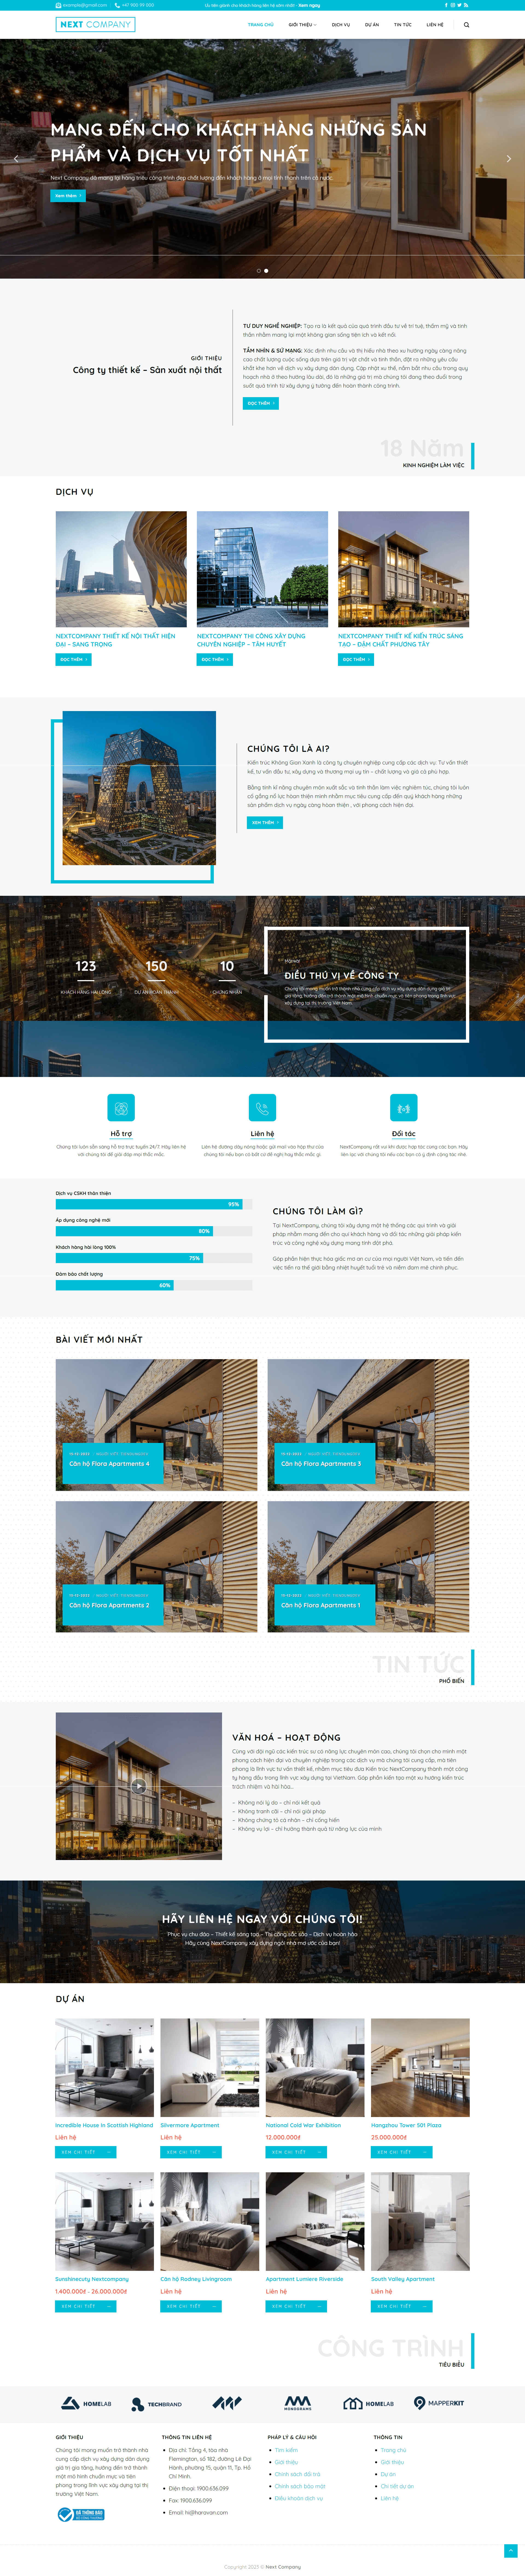 mẫu giao diện website cho thuê căn hộ next company